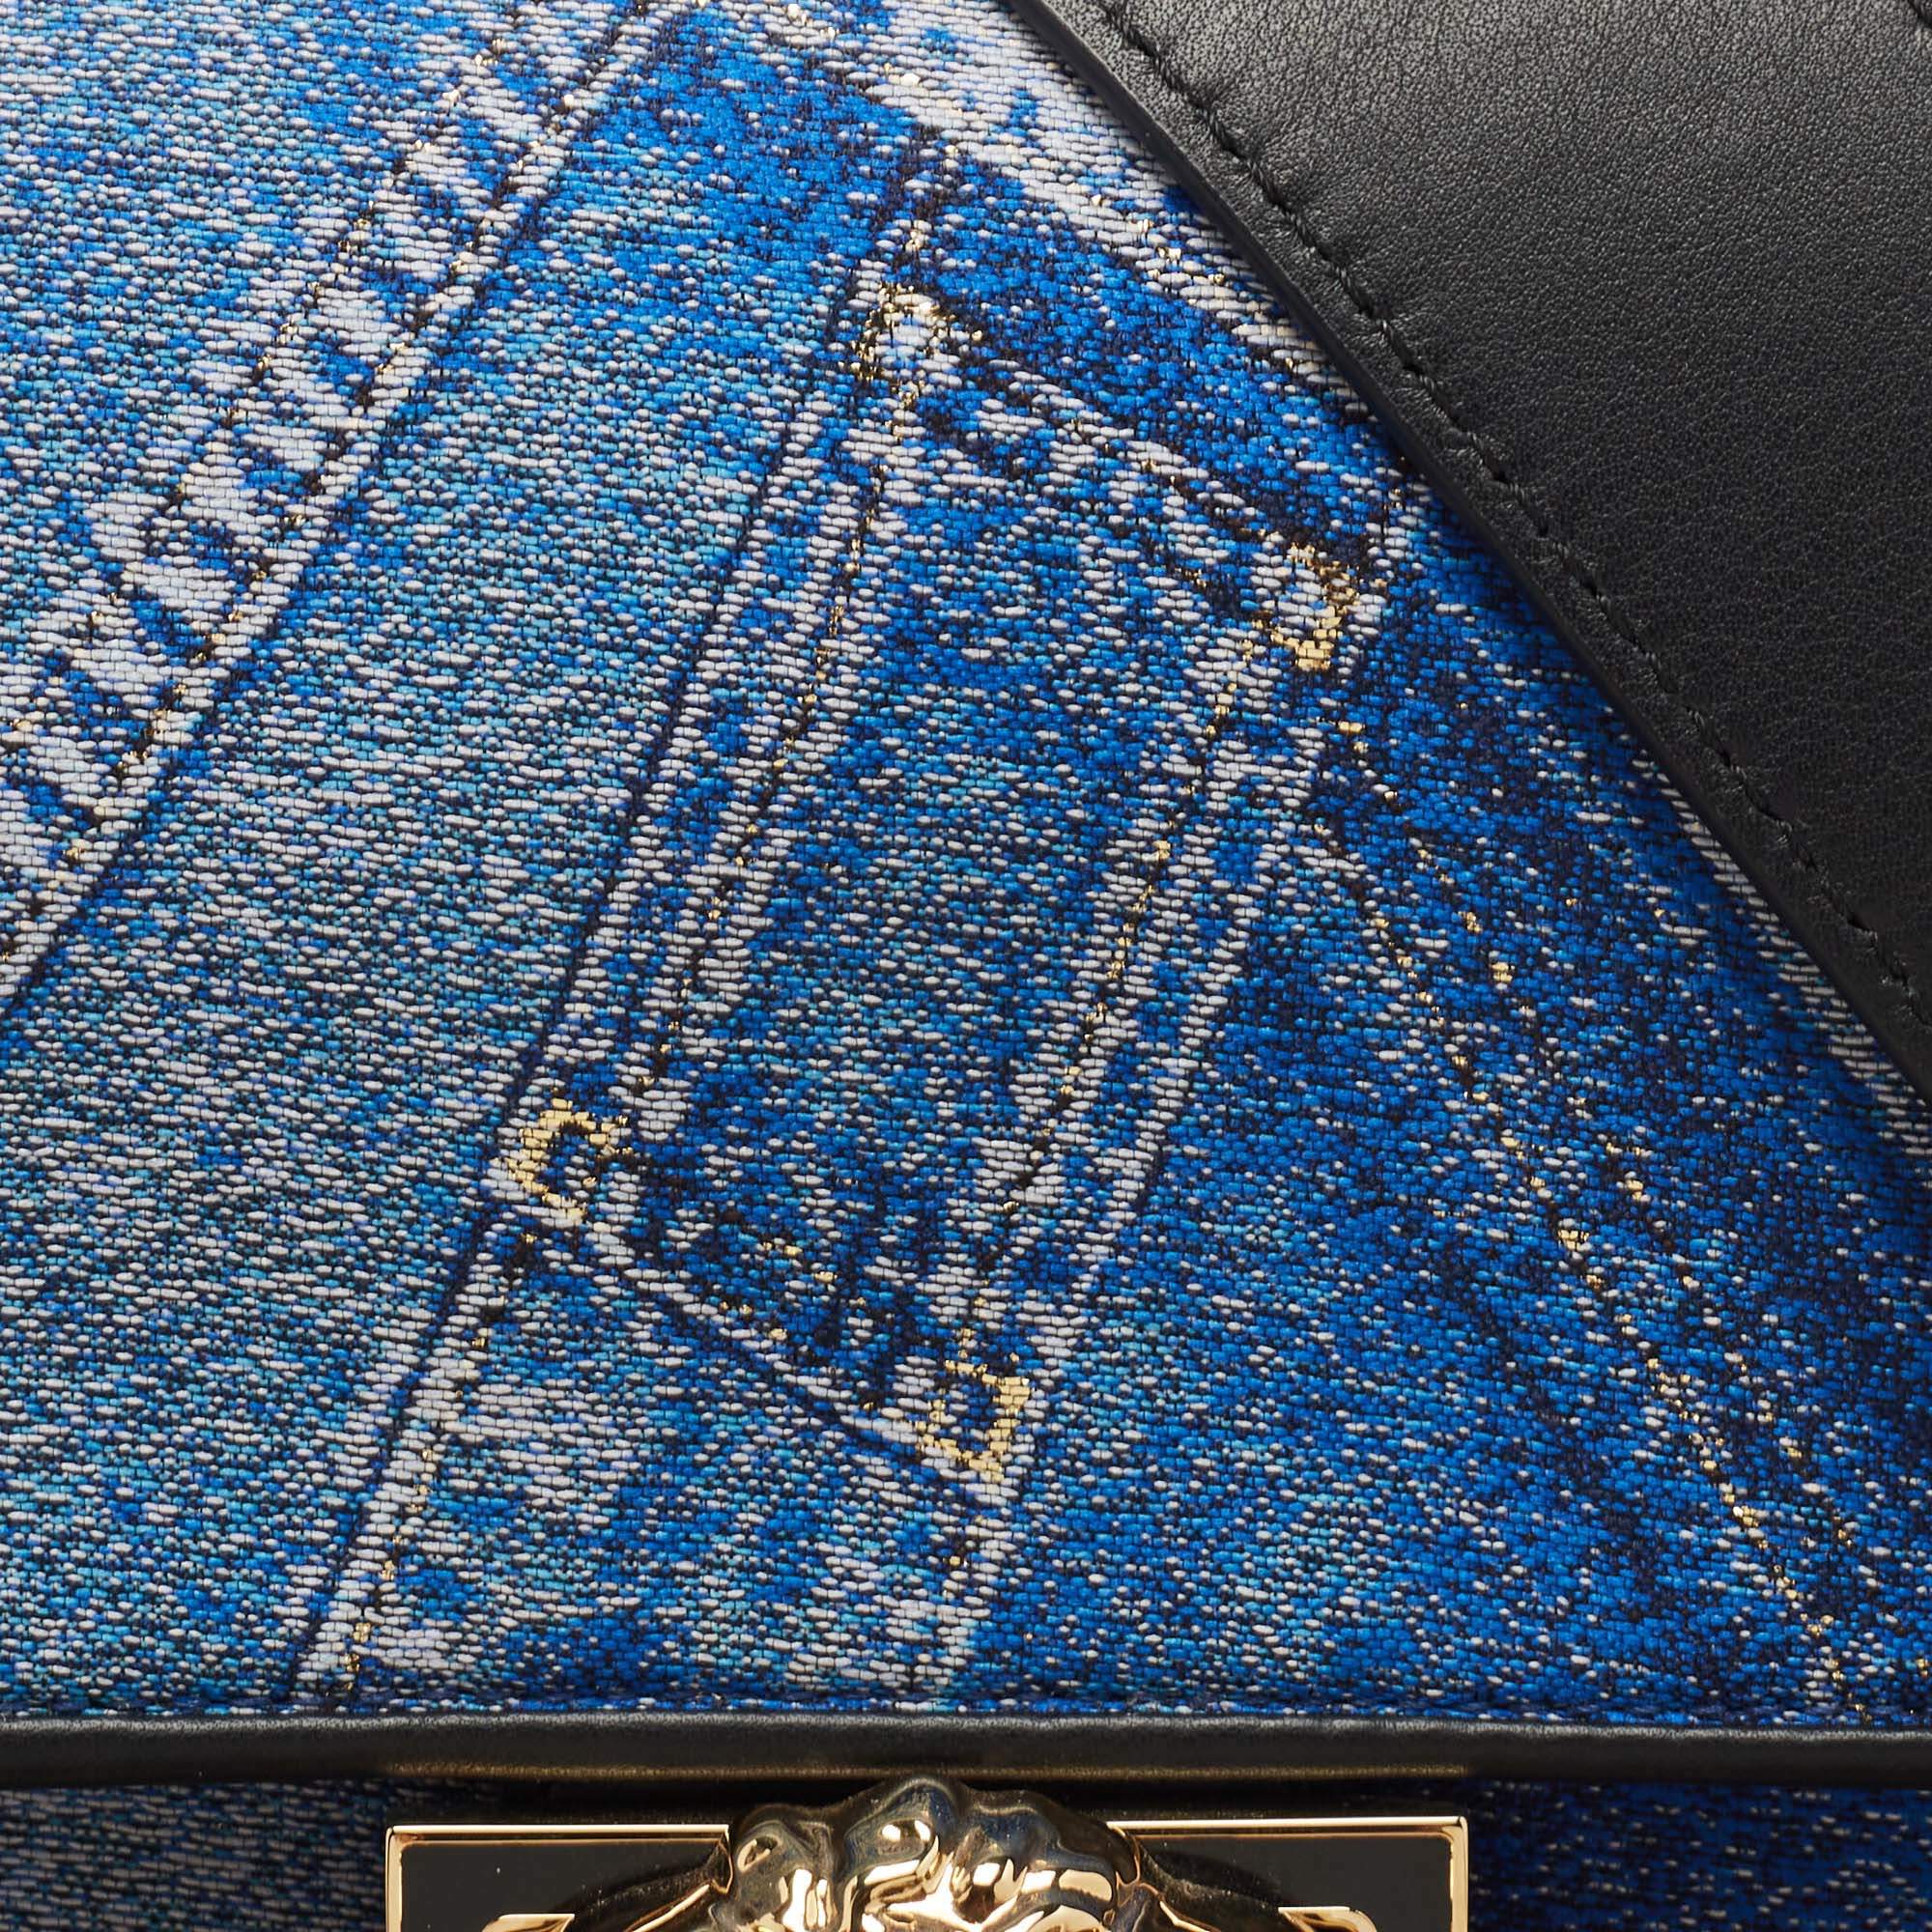 Fendi x Versace Fendace Blue/Black Denim and Leather Fendace Patchwork  Baguette Bag Fendi x Versace | The Luxury Closet